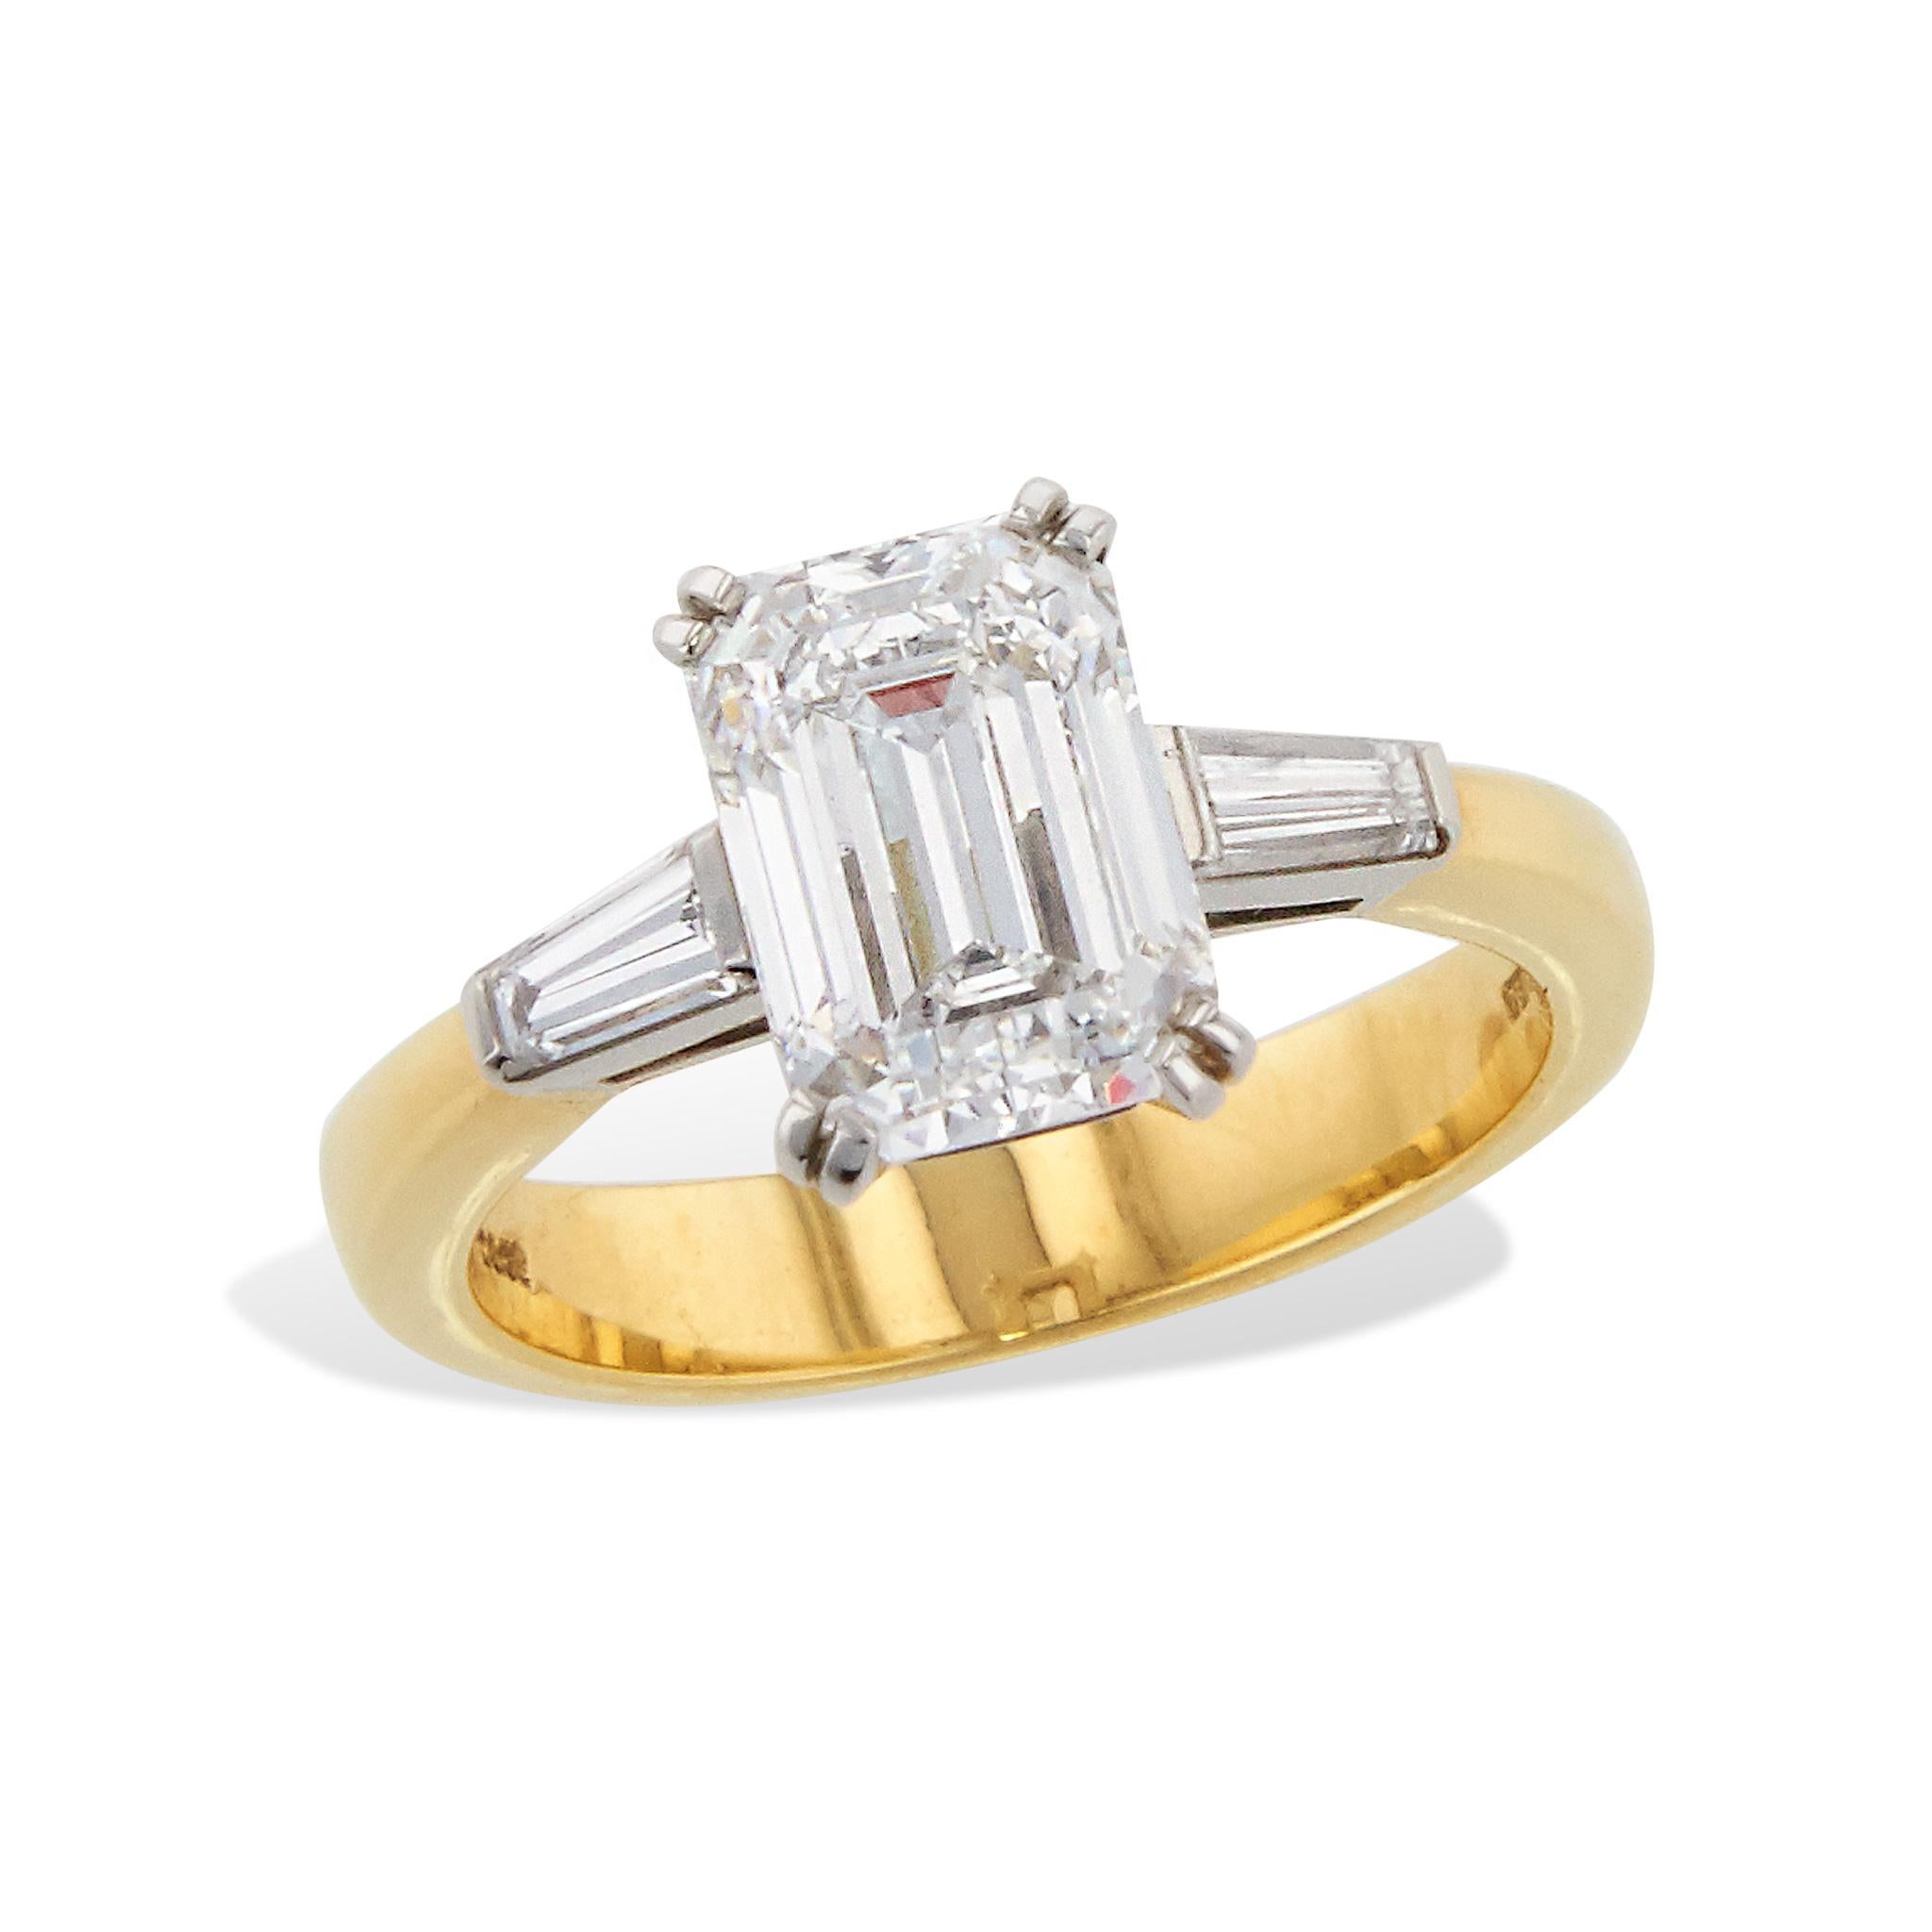 3 carat emerald-cut diamond ring tiffany